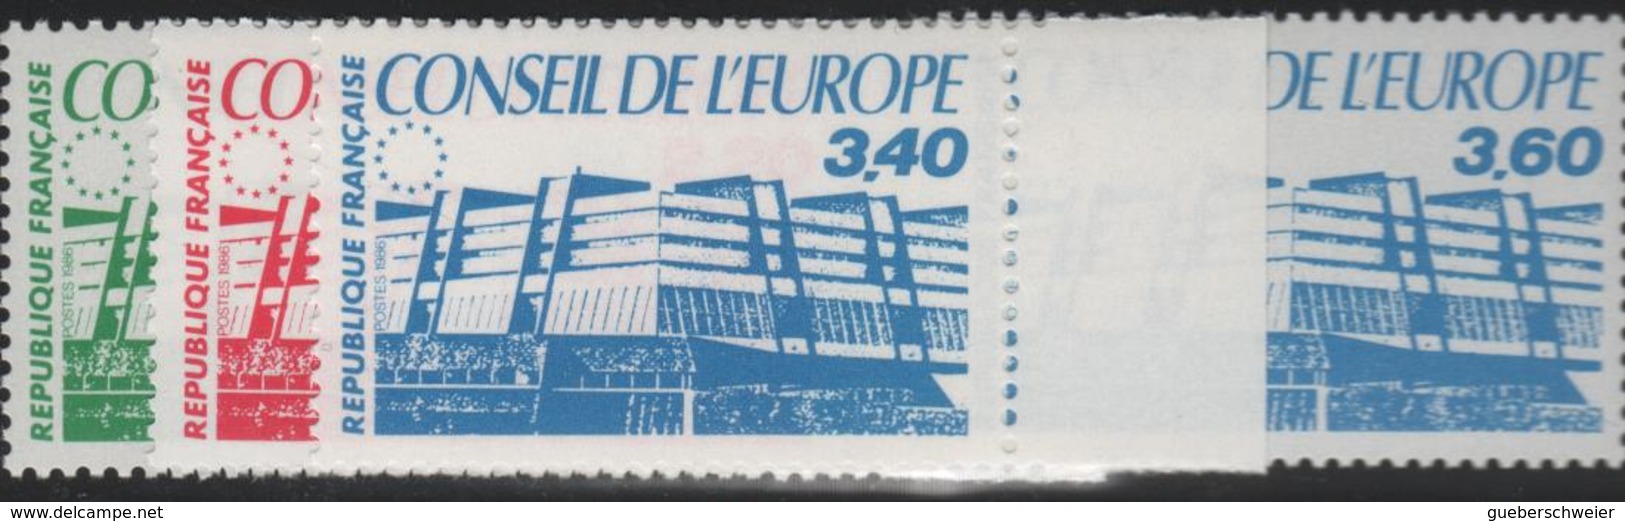 FRANCE beau lot de 89 timbres de service neufs** 1er choix sous faciale